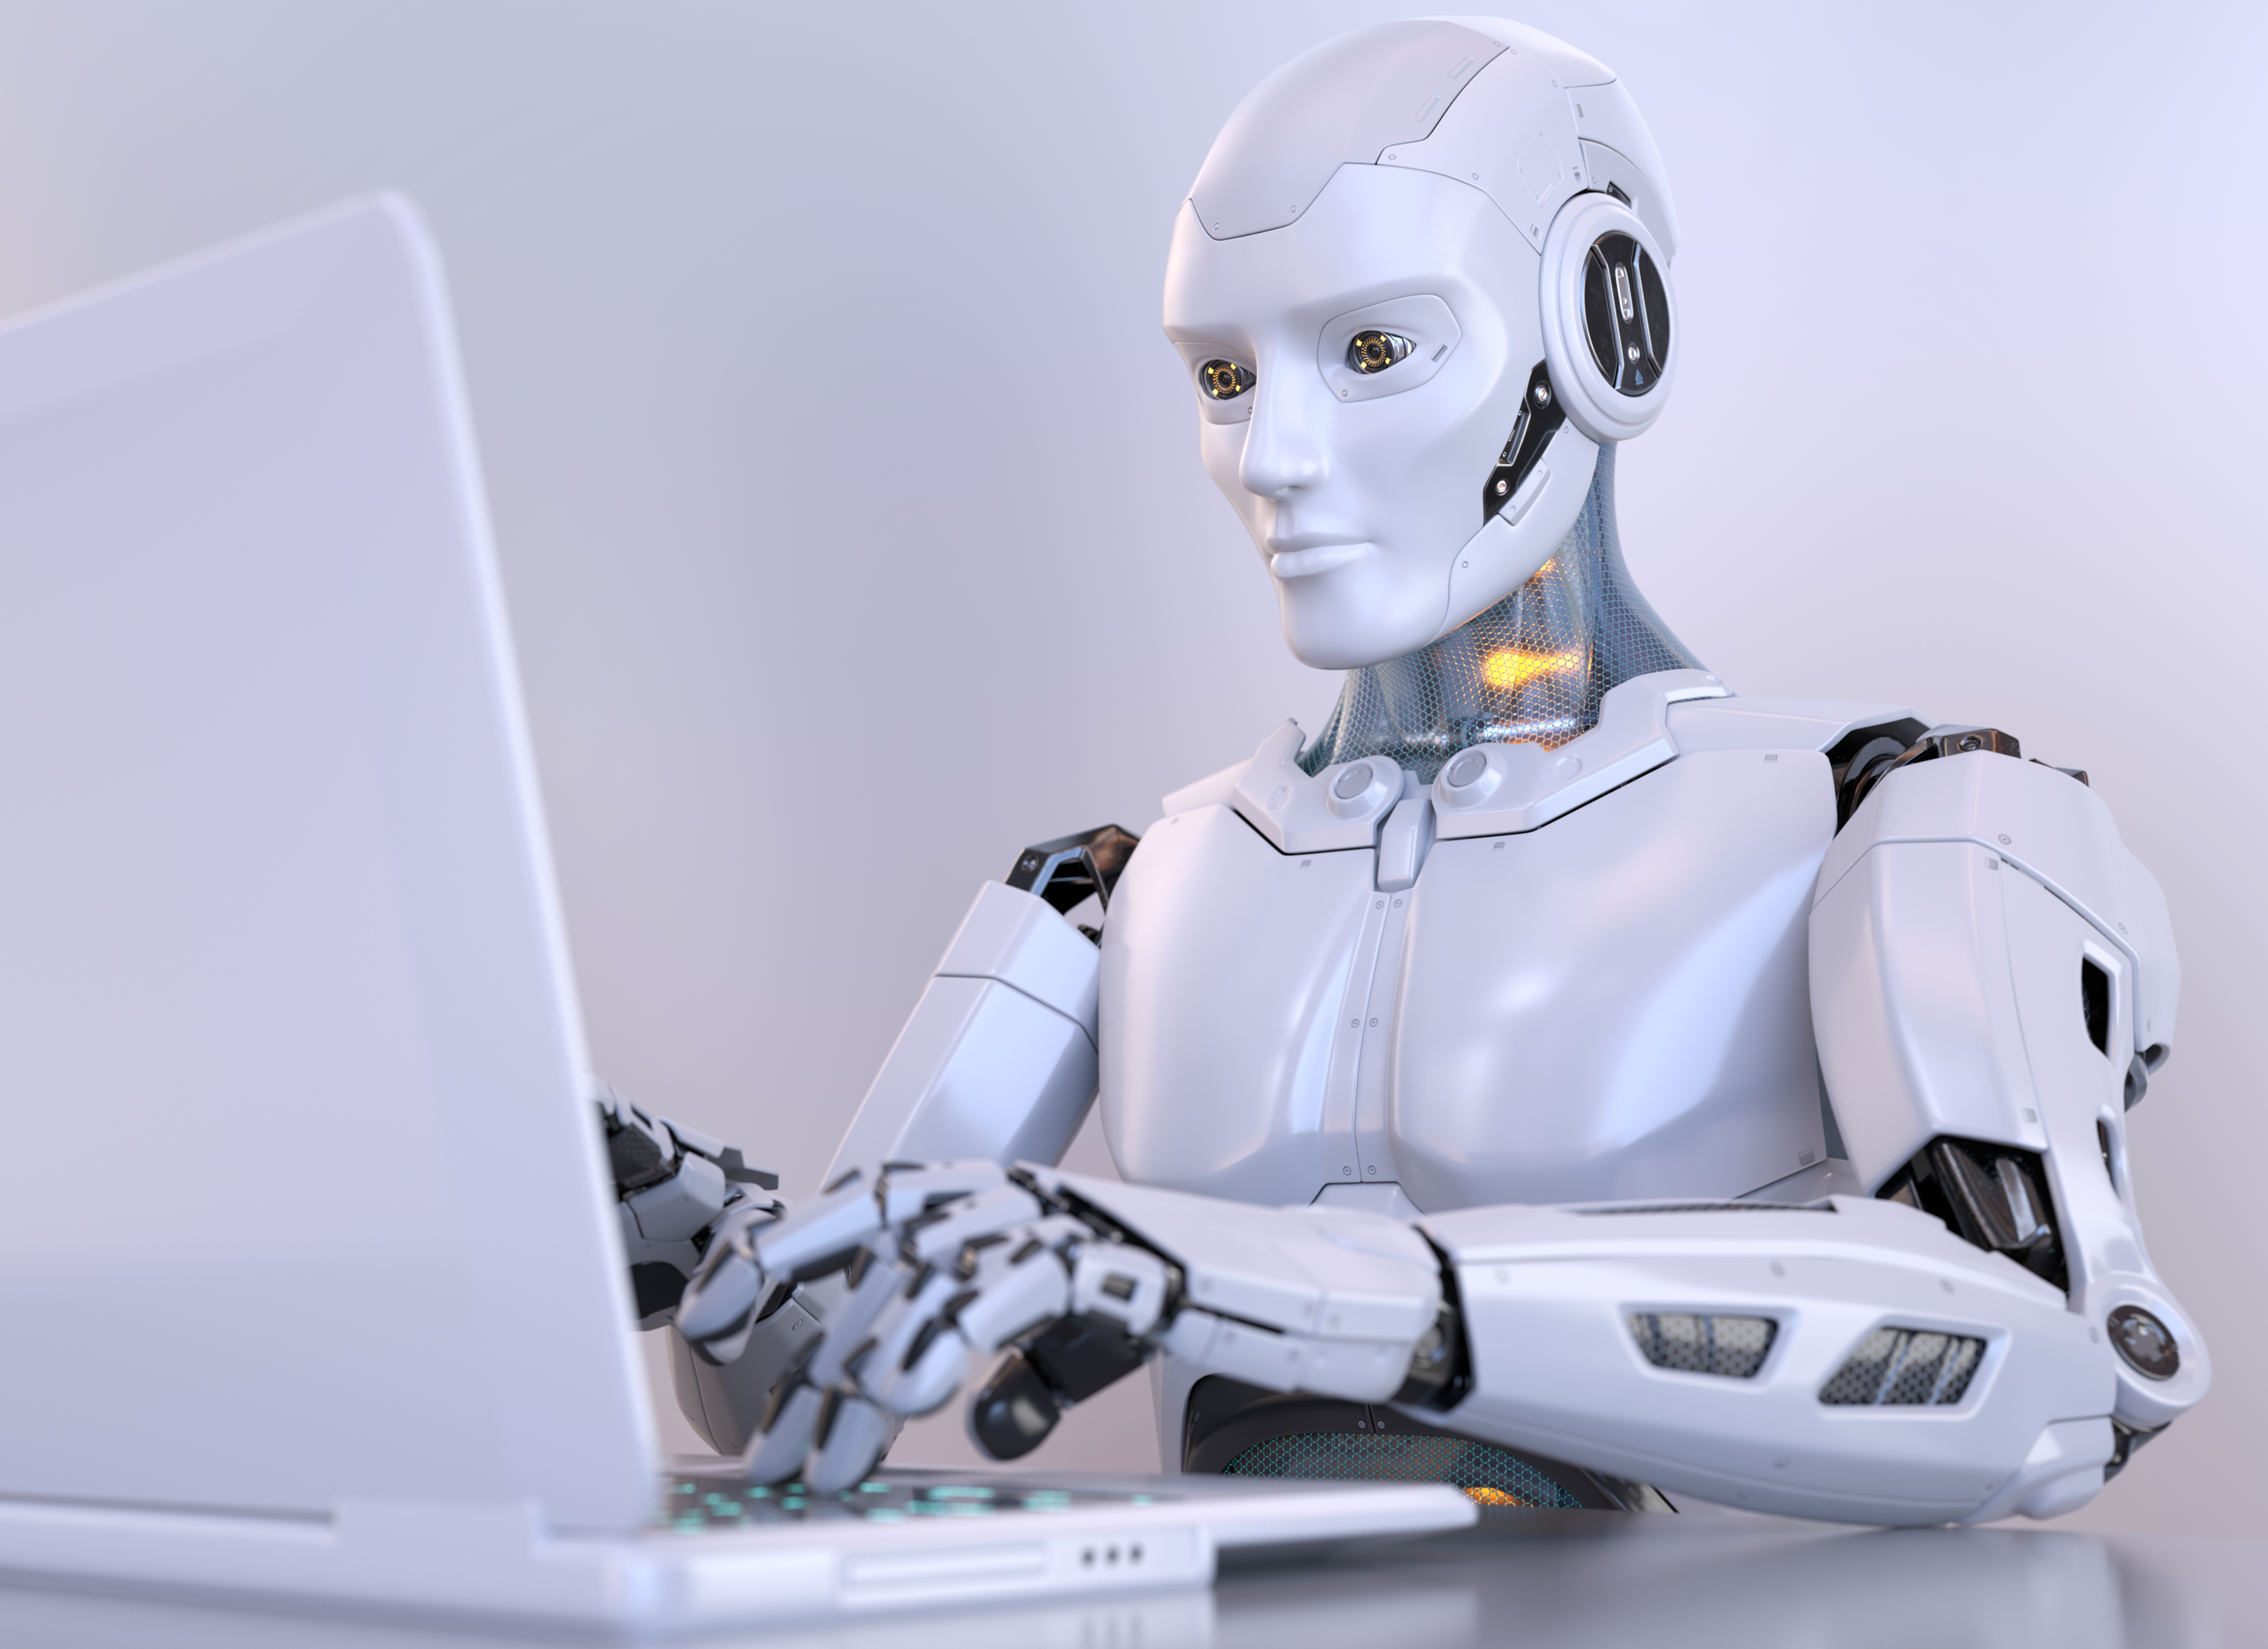 Robot typing on laptop